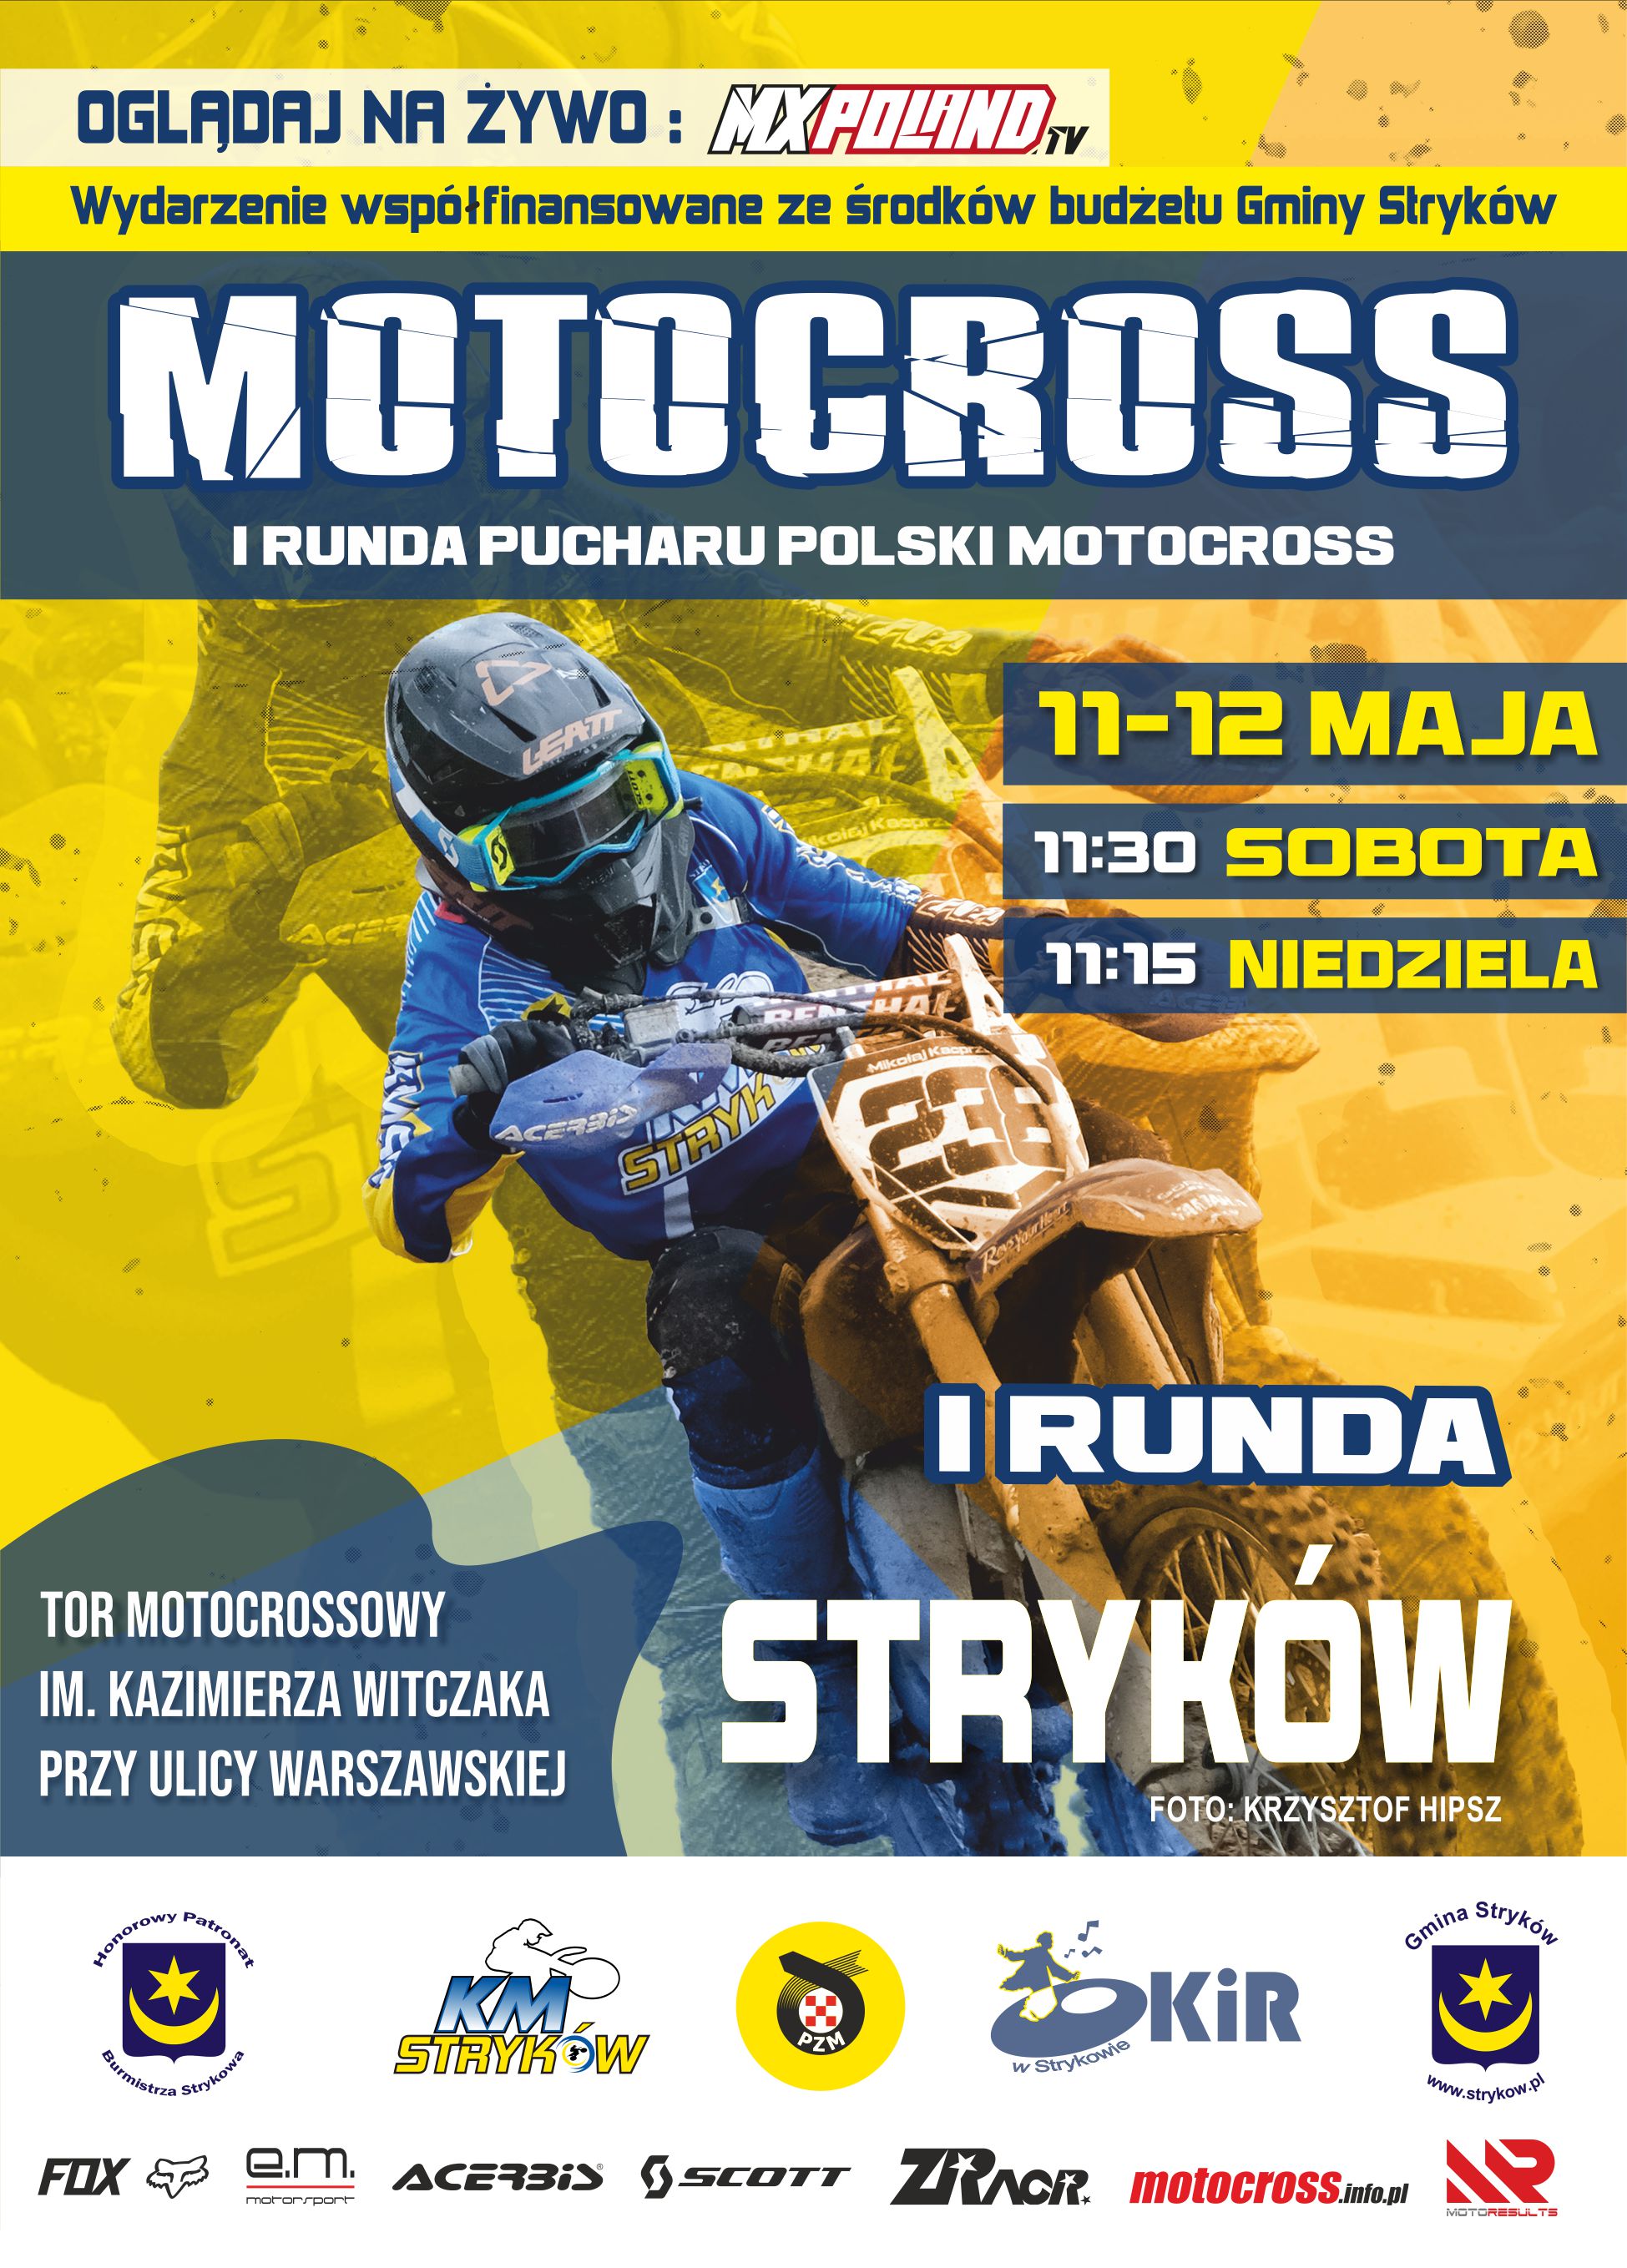 I Runda Pucharu Polski Motocross